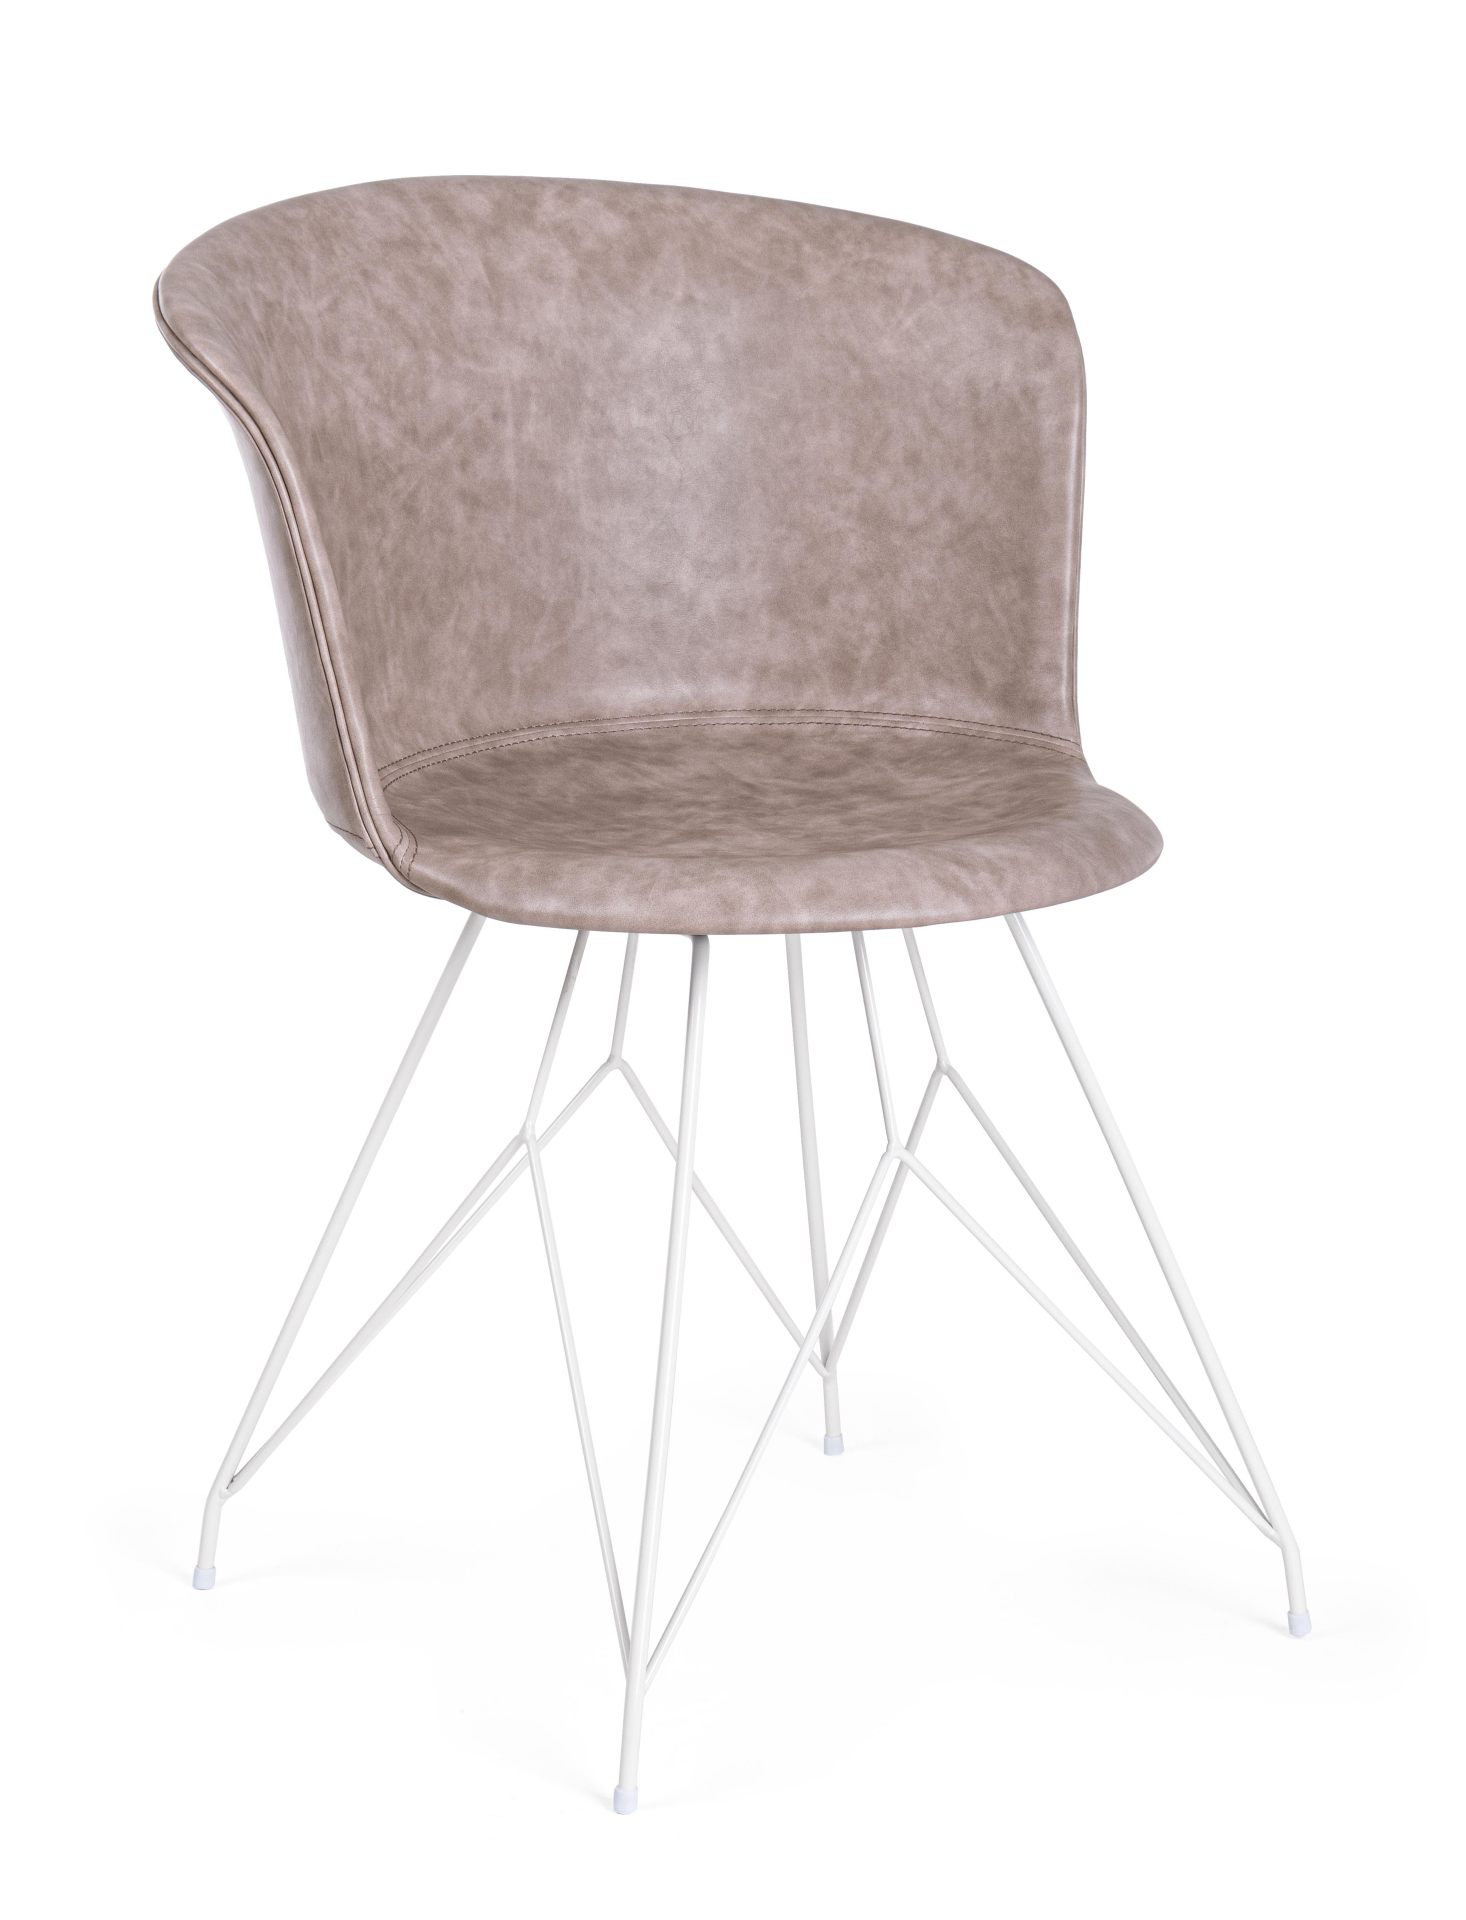 Der Esszimmerstuhl Loft überzeugt mit seinem modernem Design. Gefertigt wurde der Stuhl aus Kunstleder, welches einen Beige Farbton besitzt. Das Gestell ist aus Metall und ist Weiß. Die Sitzhöhe beträgt 45 cm.